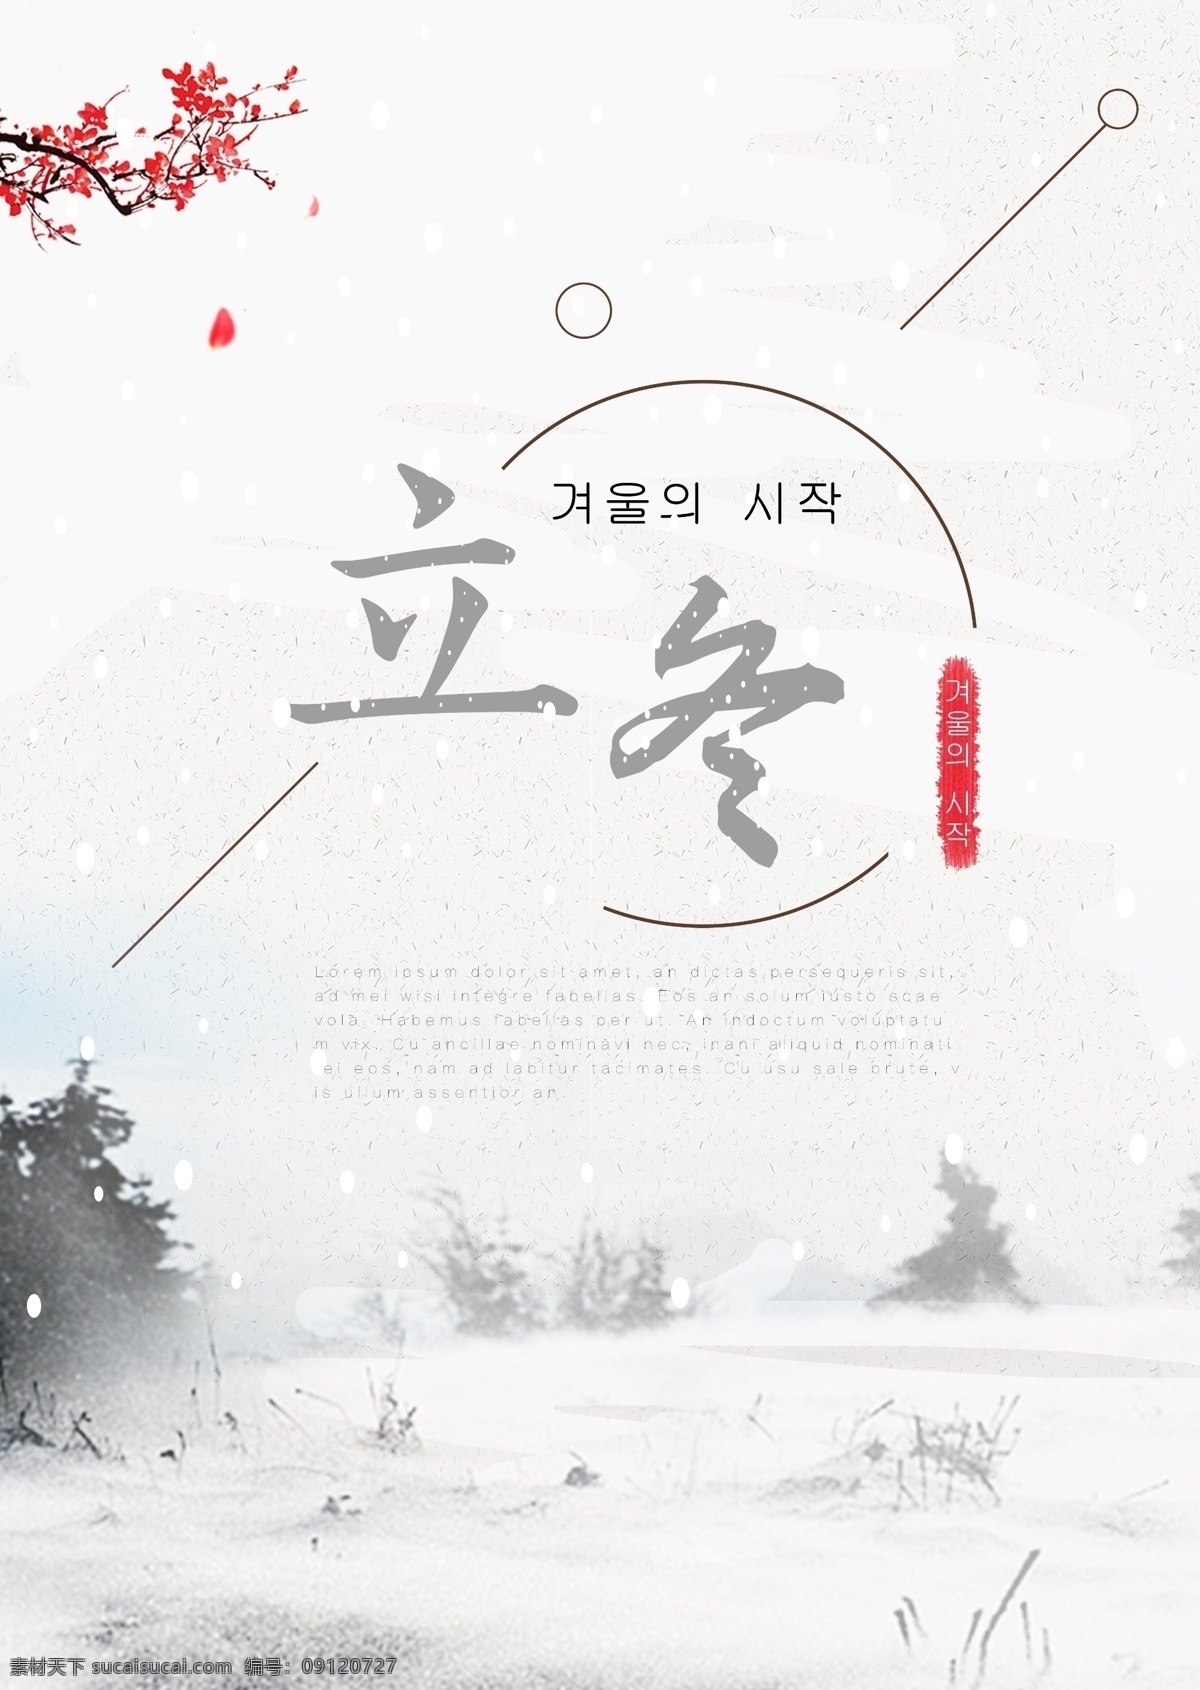 灰色 简单 墨水 古老 大厦 冬天 海报 颜色 墨 冬季 朝鲜的 中文 英语 空白 美丽 礼品 红花 粉 景观